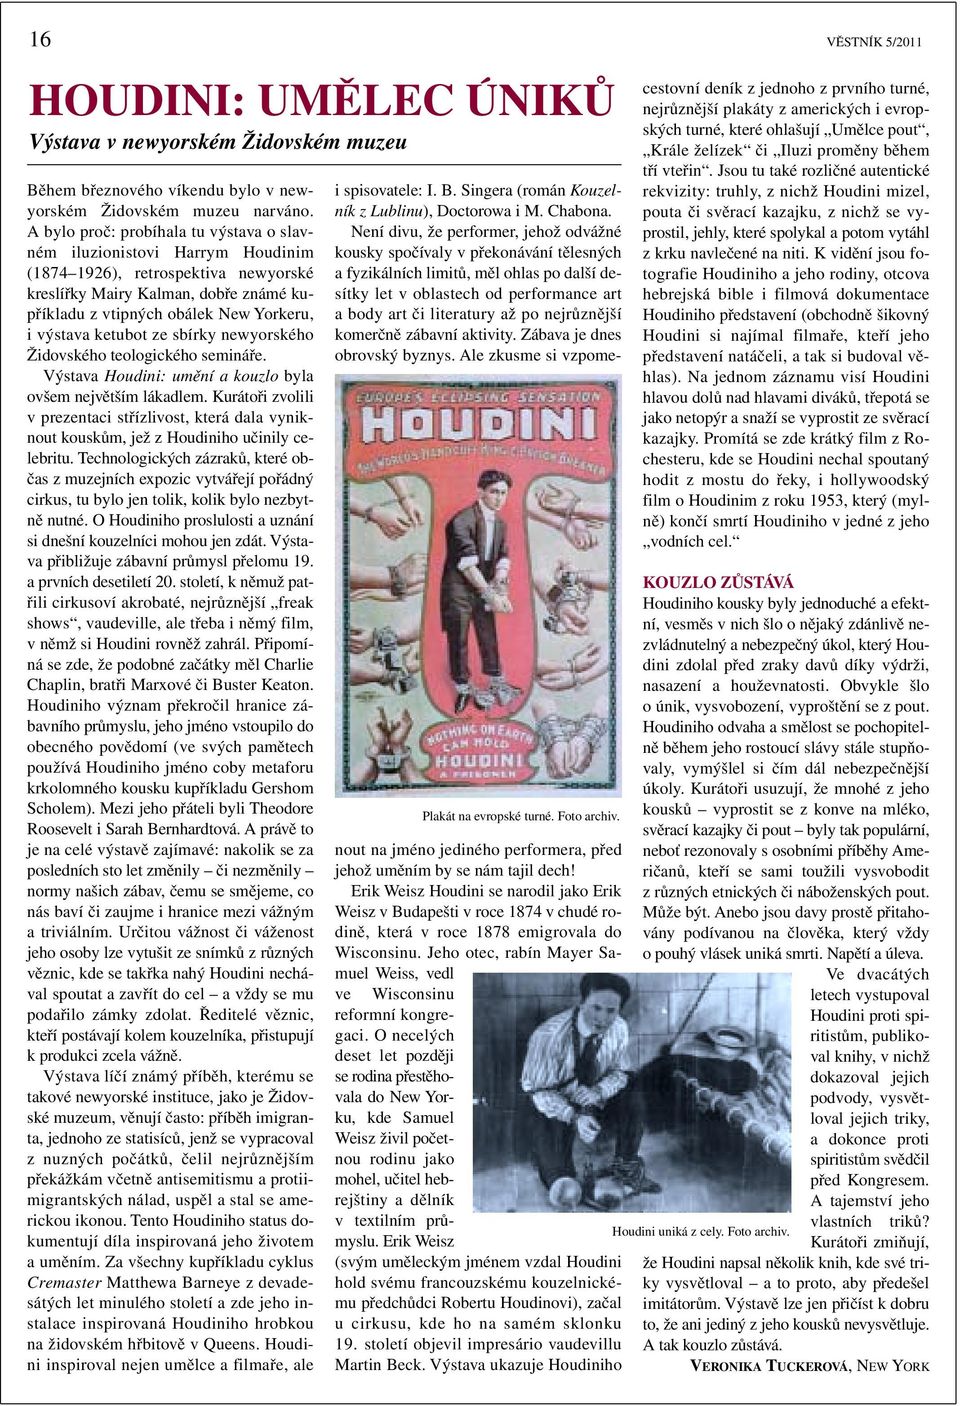 ketubot ze sbírky newyorského Židovského teologického semináře. Výstava Houdini: umění a kouzlo byla ovšem největším lákadlem.